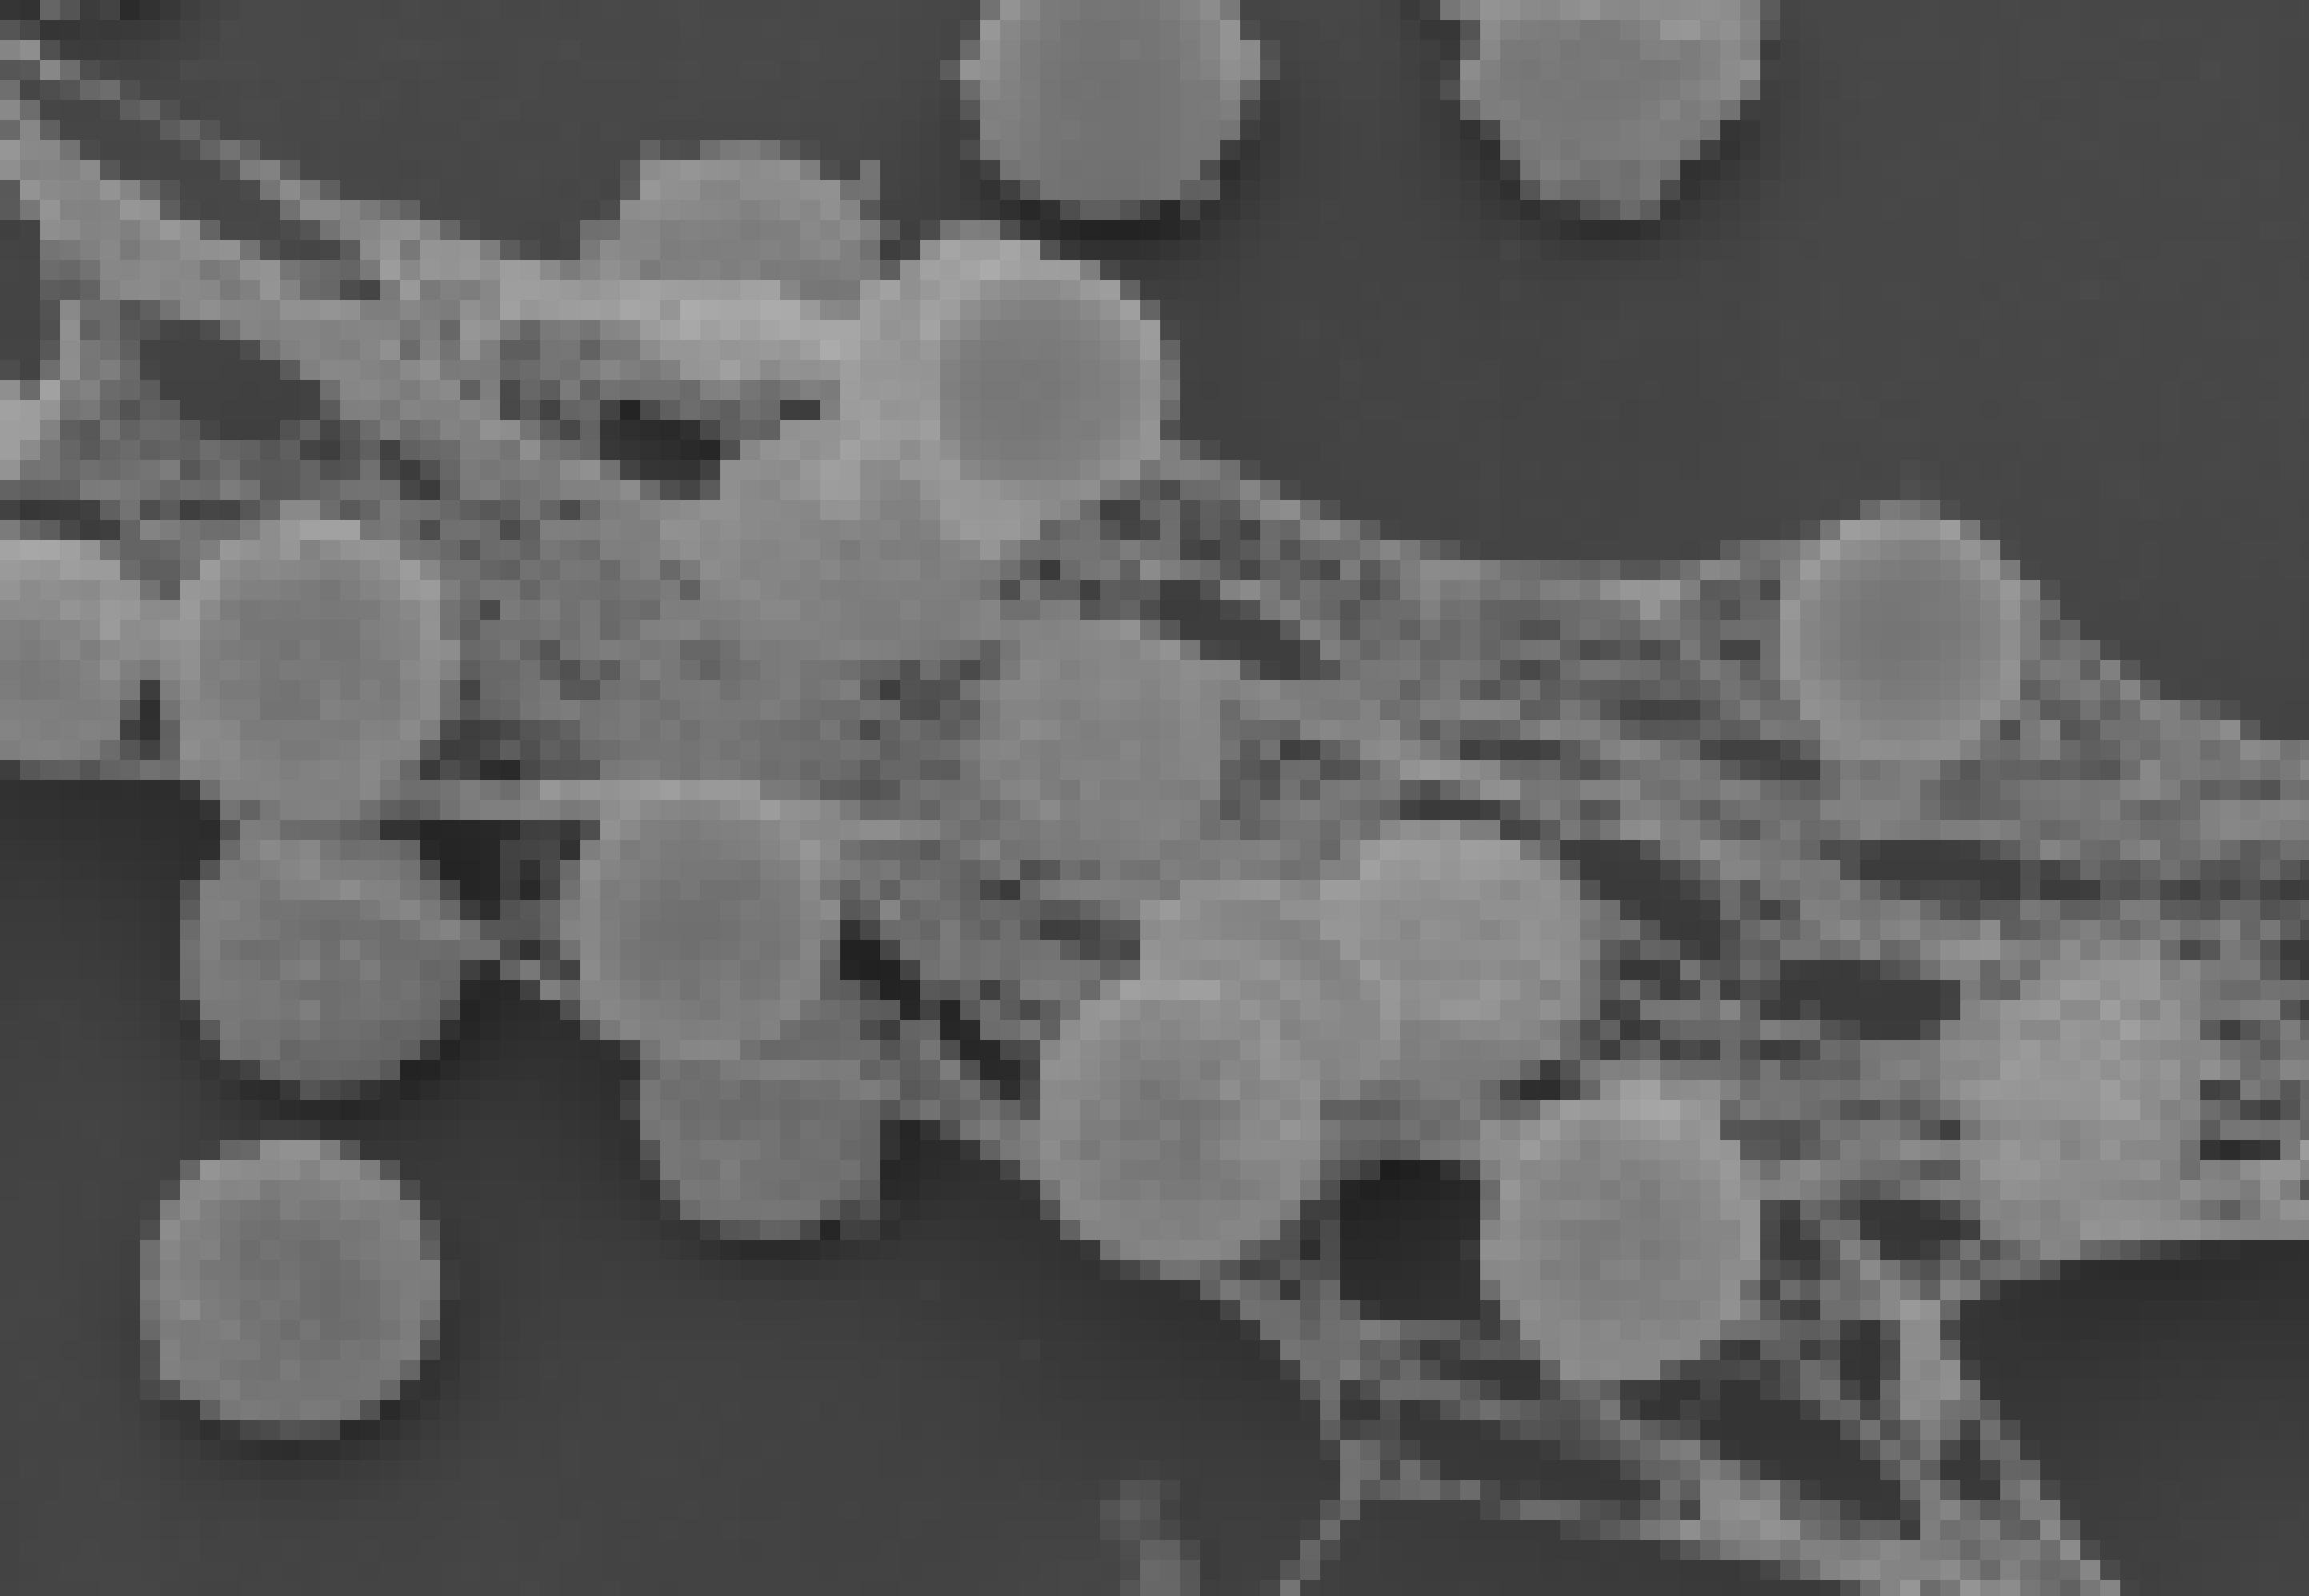 Das Bild zeigt eine rasterelektronenmikroskopische Aufnahme von aktivierten Immunzellen, die durch eine netzartige Struktur miteinander verbunden sind